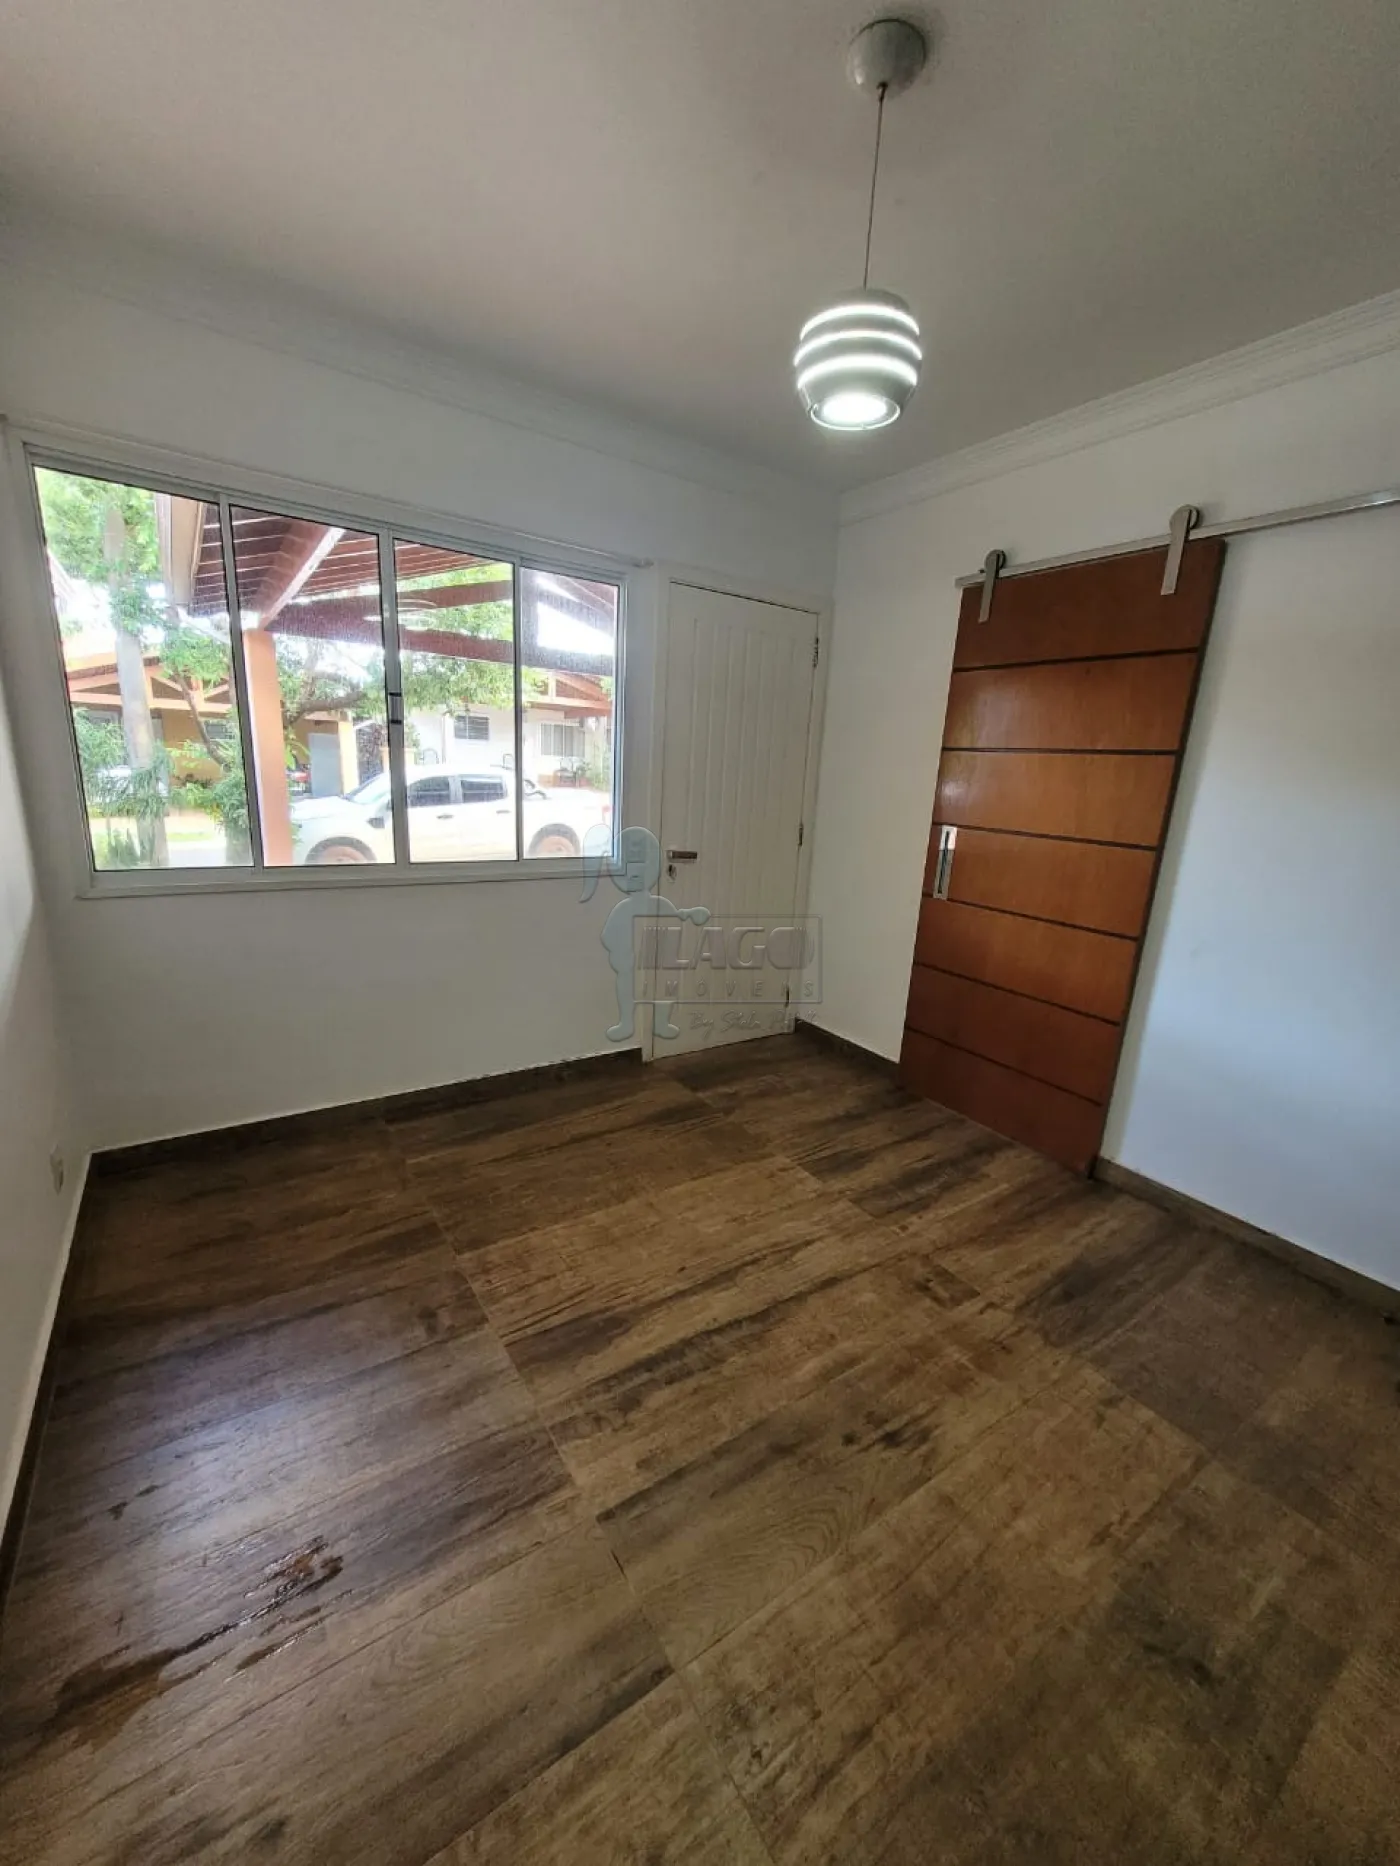 Comprar Casa condomínio / Padrão em Ribeirão Preto R$ 640.000,00 - Foto 2